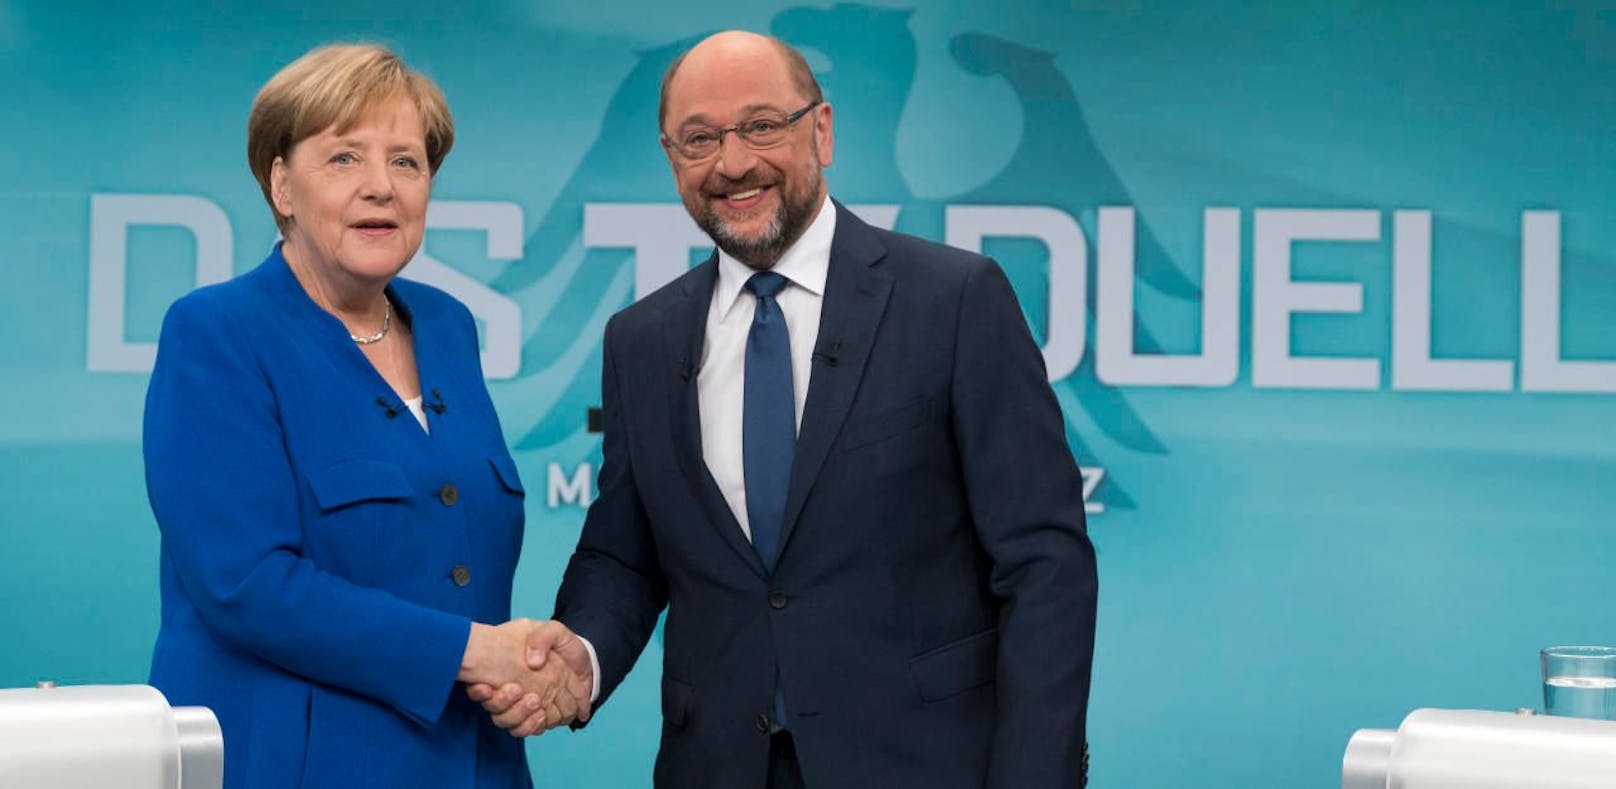 CDU-Kanzlerin Angela Merkel und ihr SPD-Herausforderer Martin Schulz beim TV-Duell